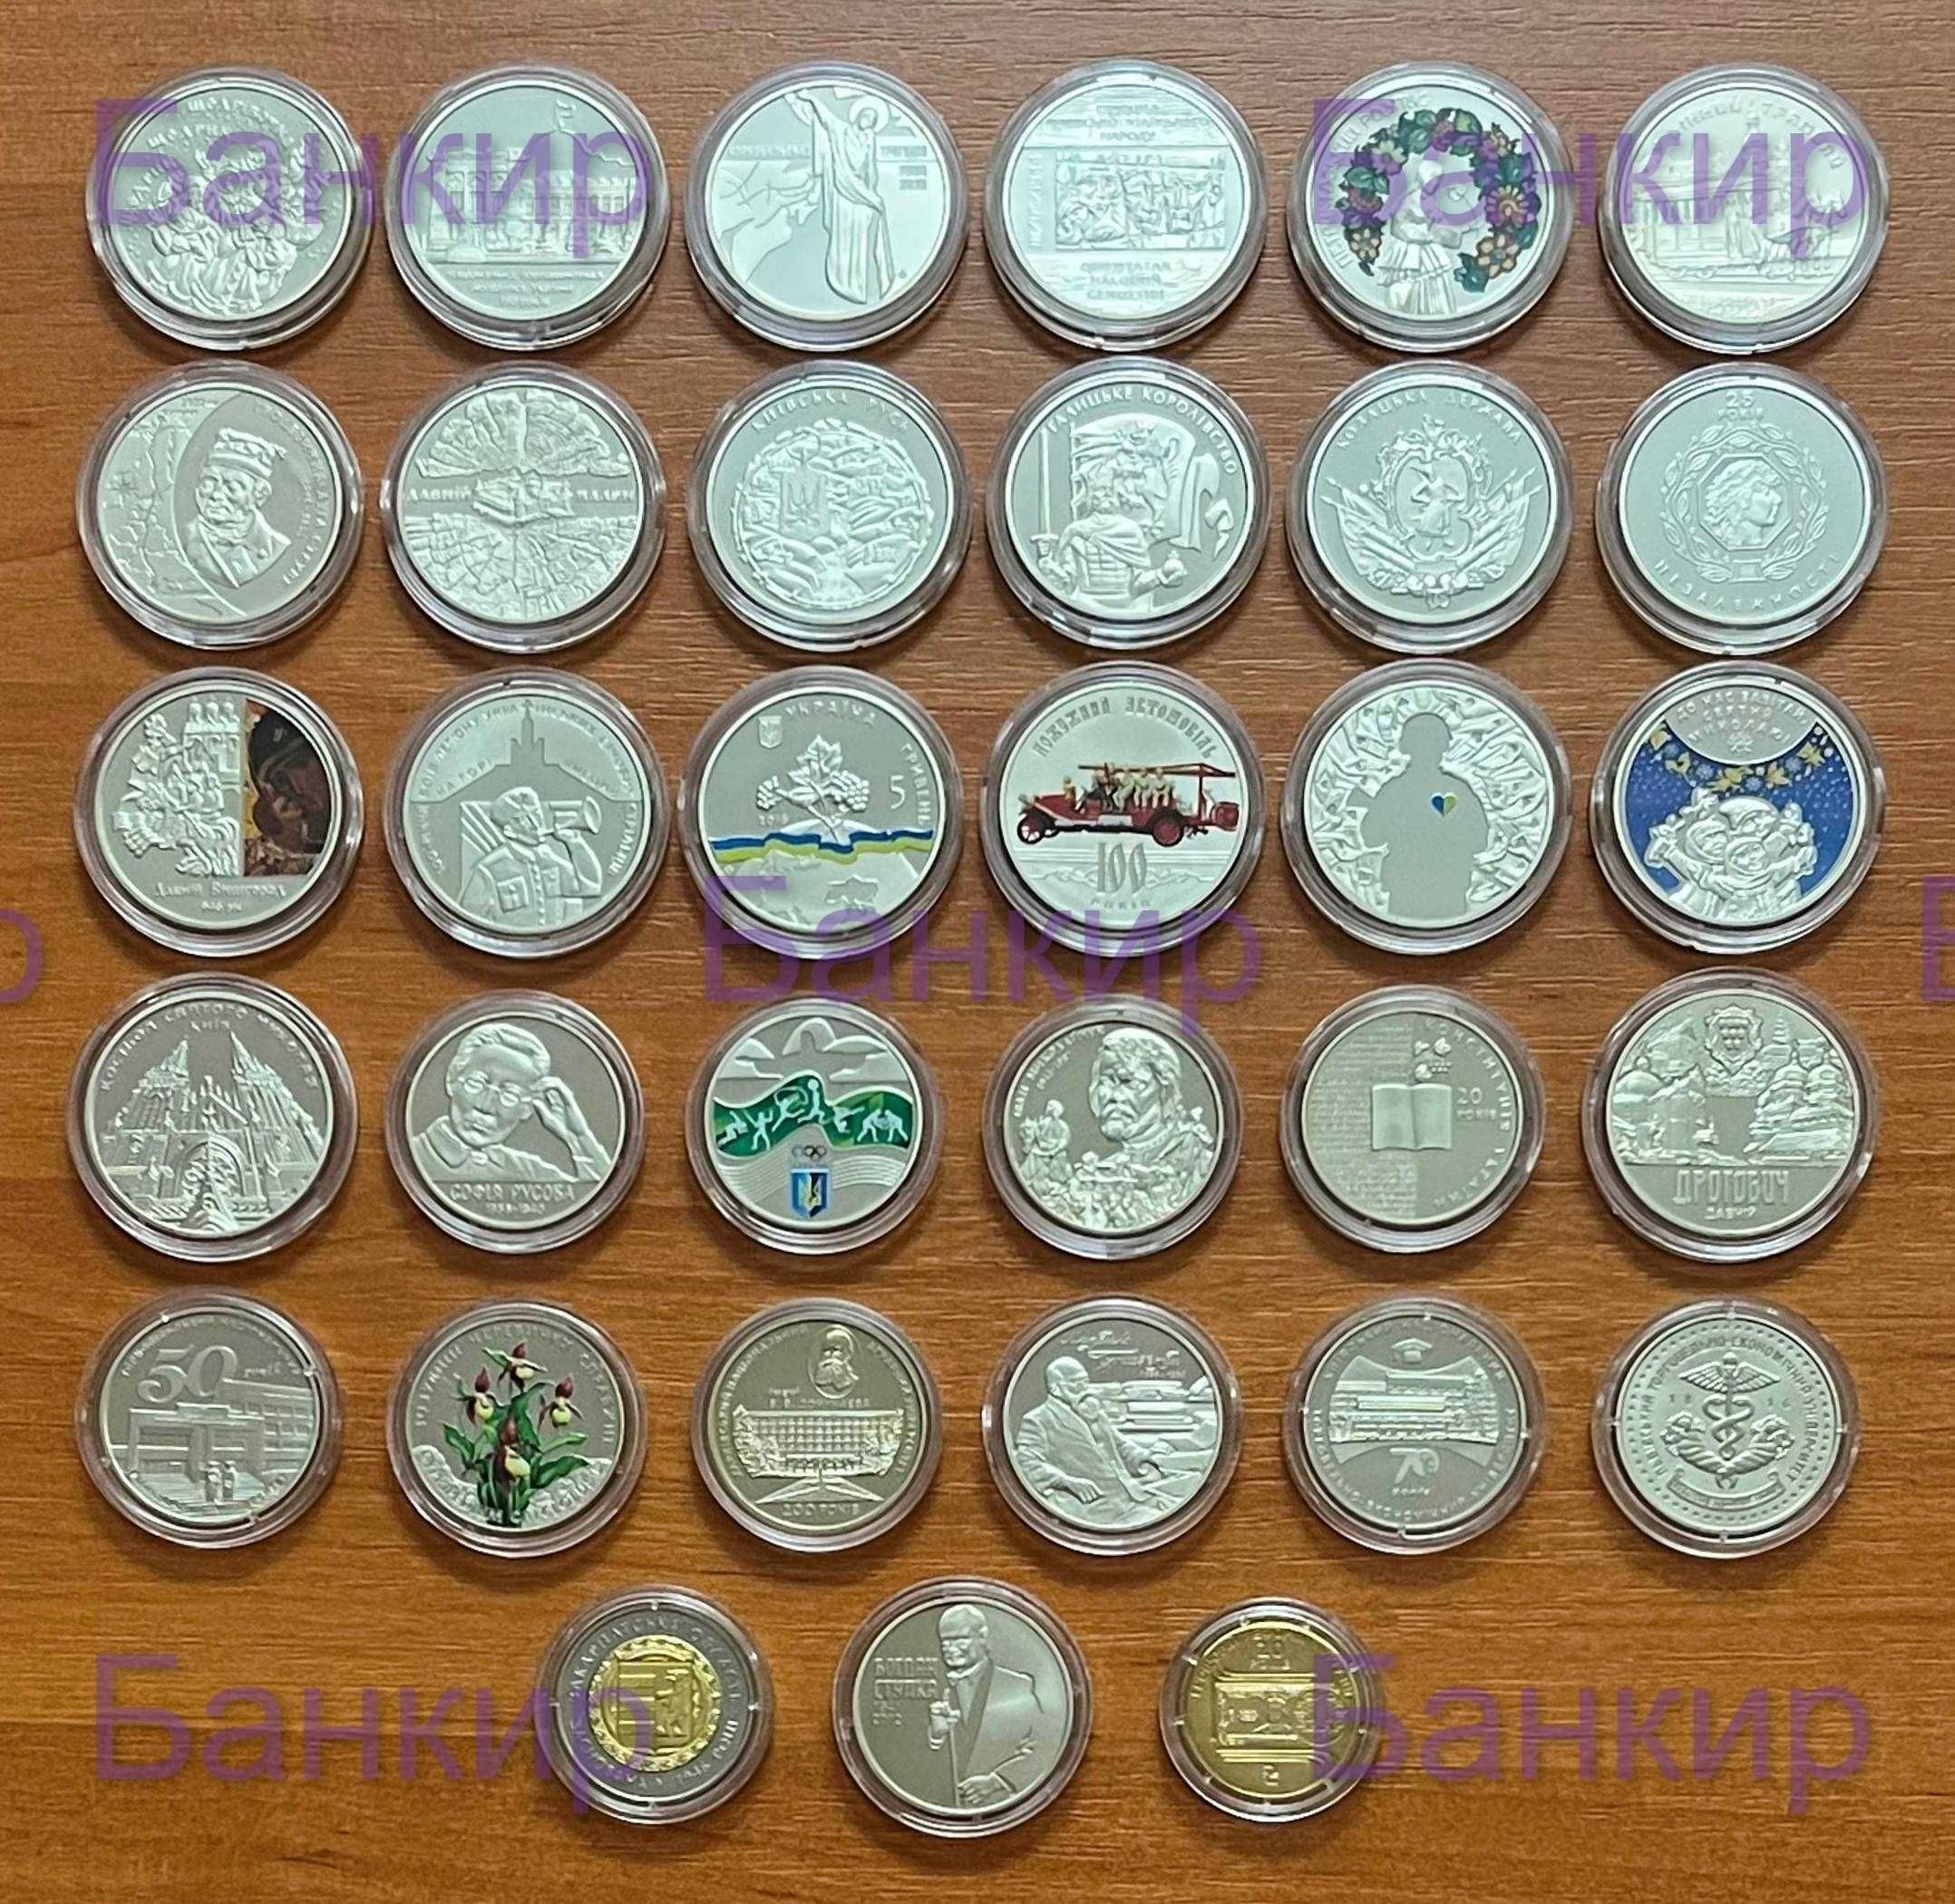 Полный годовой набор монет Украины за 2016 г. (32 монеты + 1 медаль)